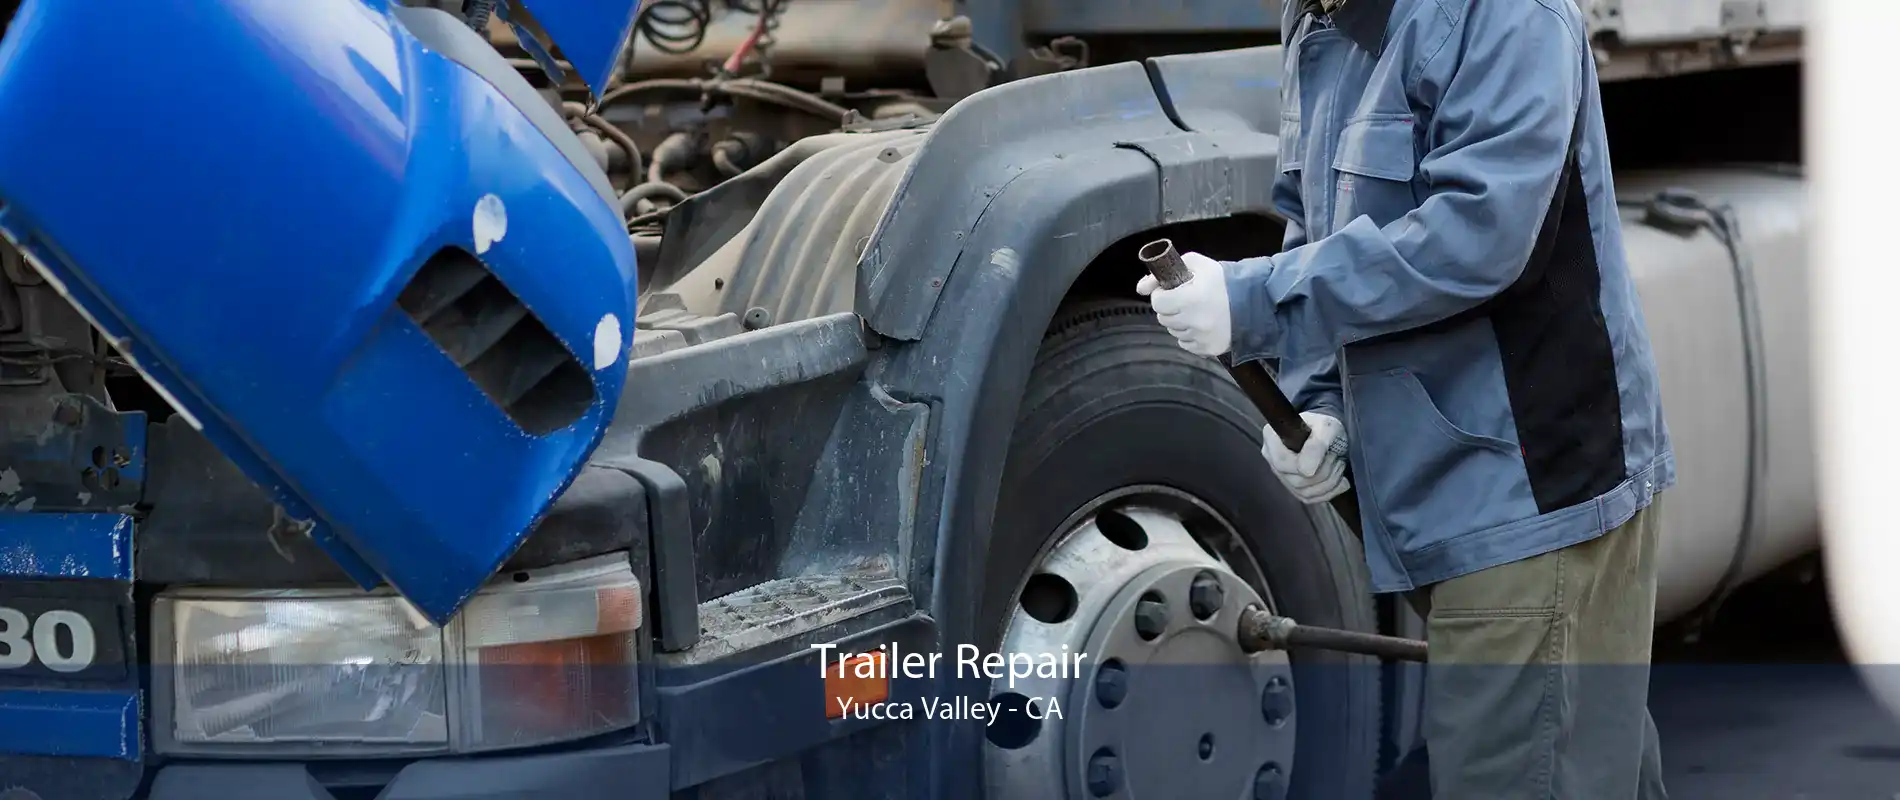 Trailer Repair Yucca Valley - CA